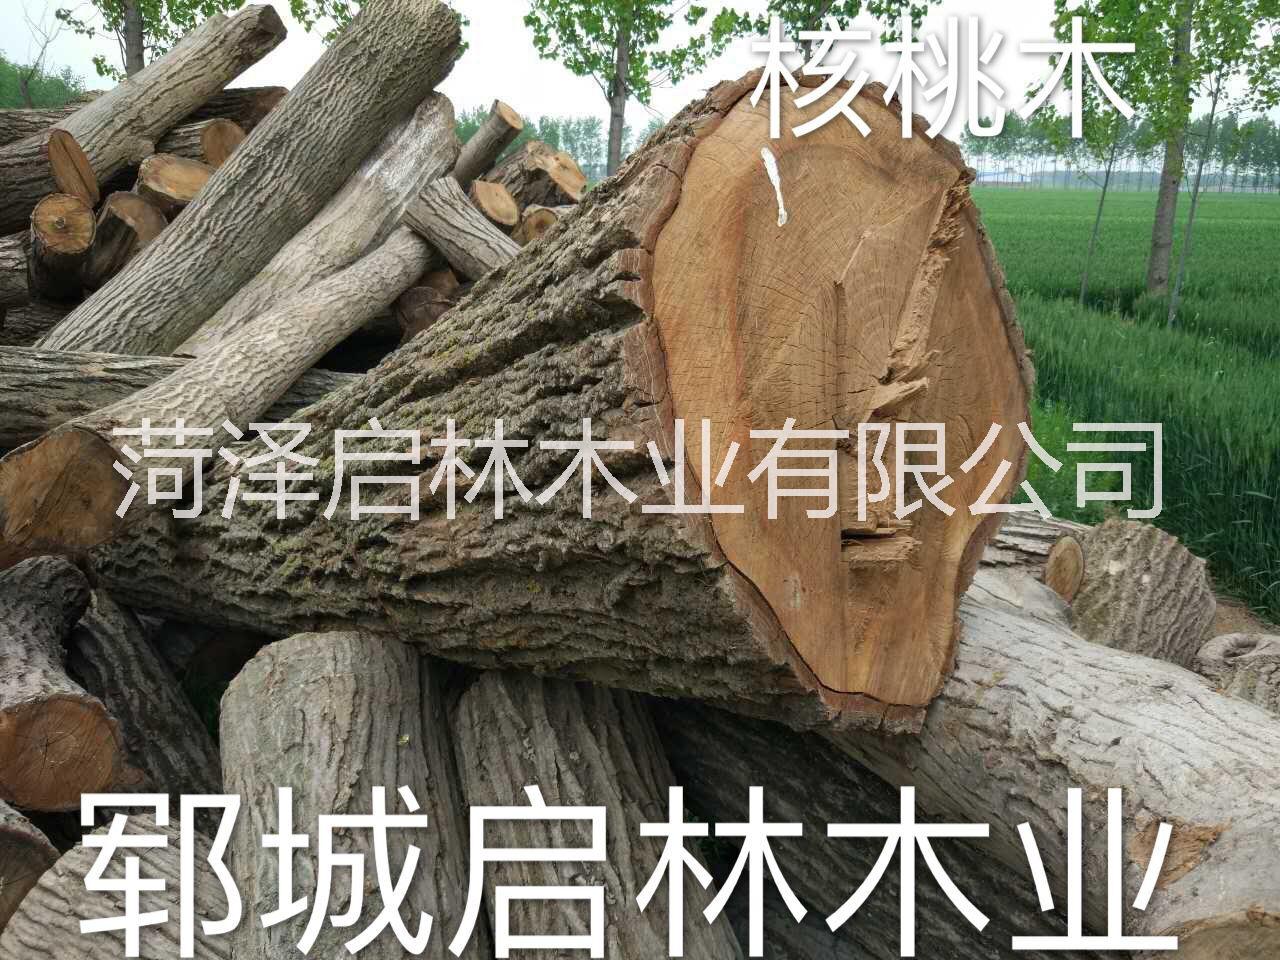 菏泽市核桃木厂家大量供应用于工艺品/雕刻/制作家具等的核桃木/优质大径核桃原木批发